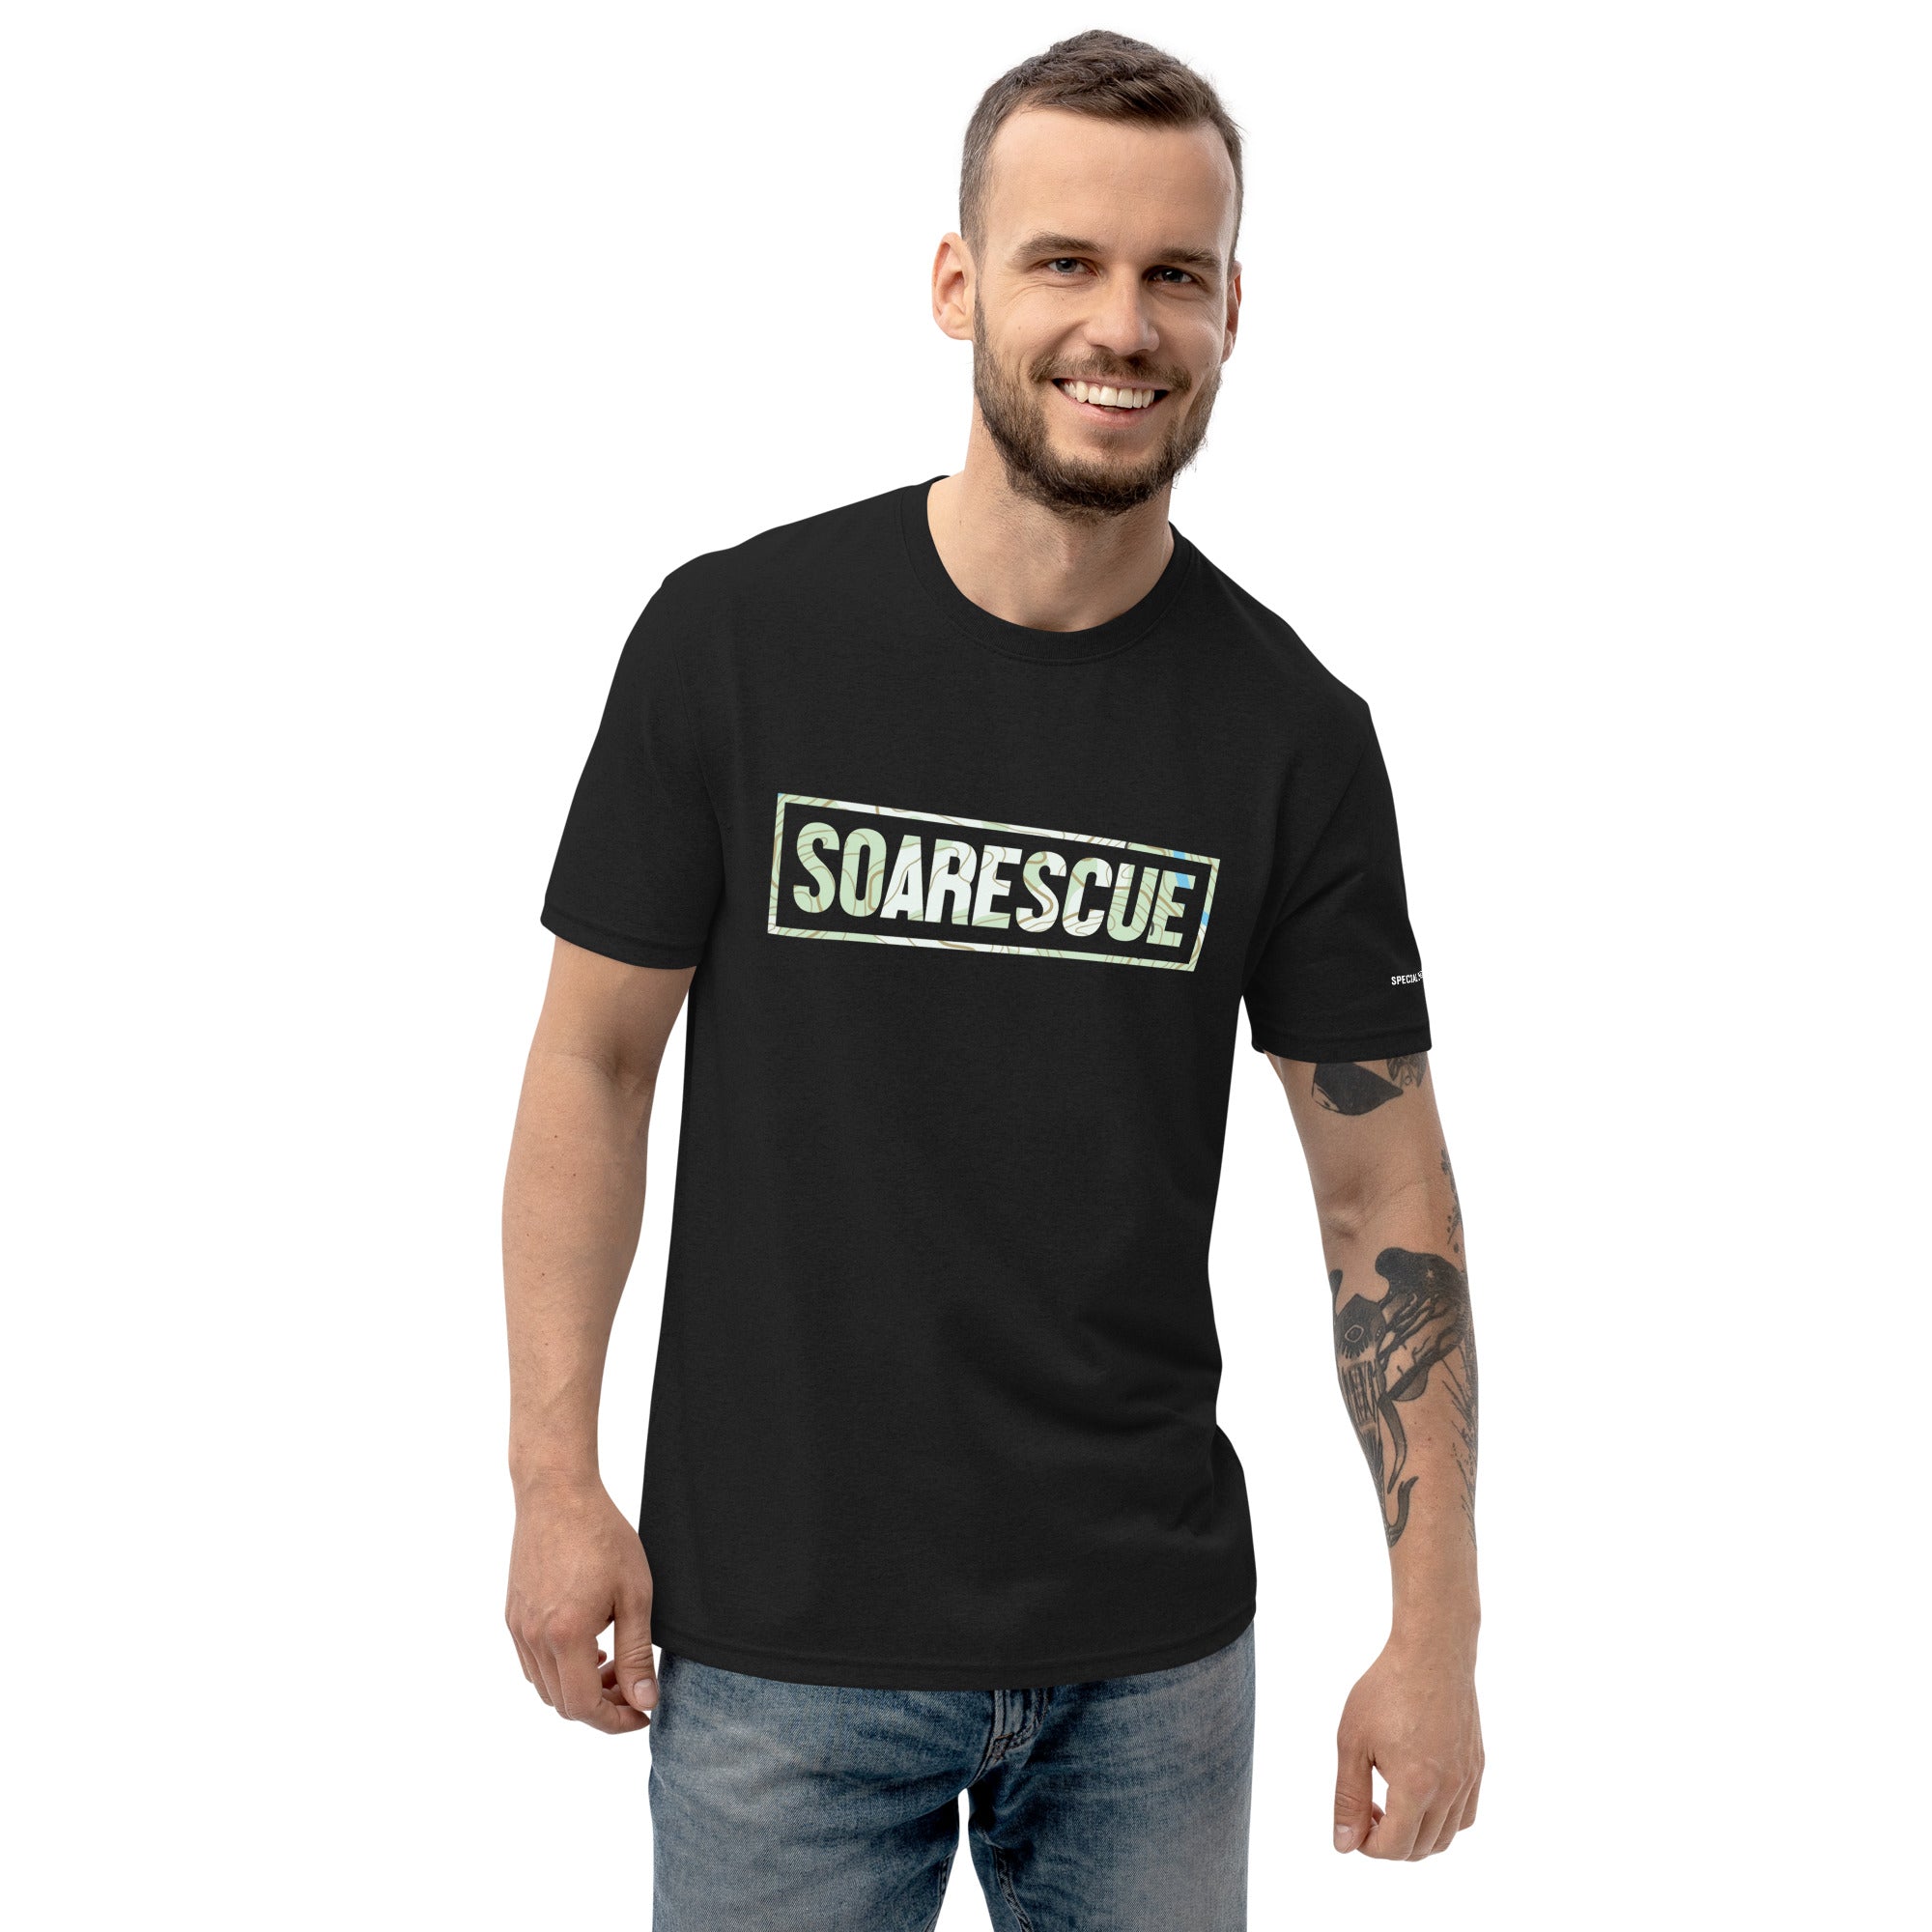 SOARescue T-shirt - SOARescue